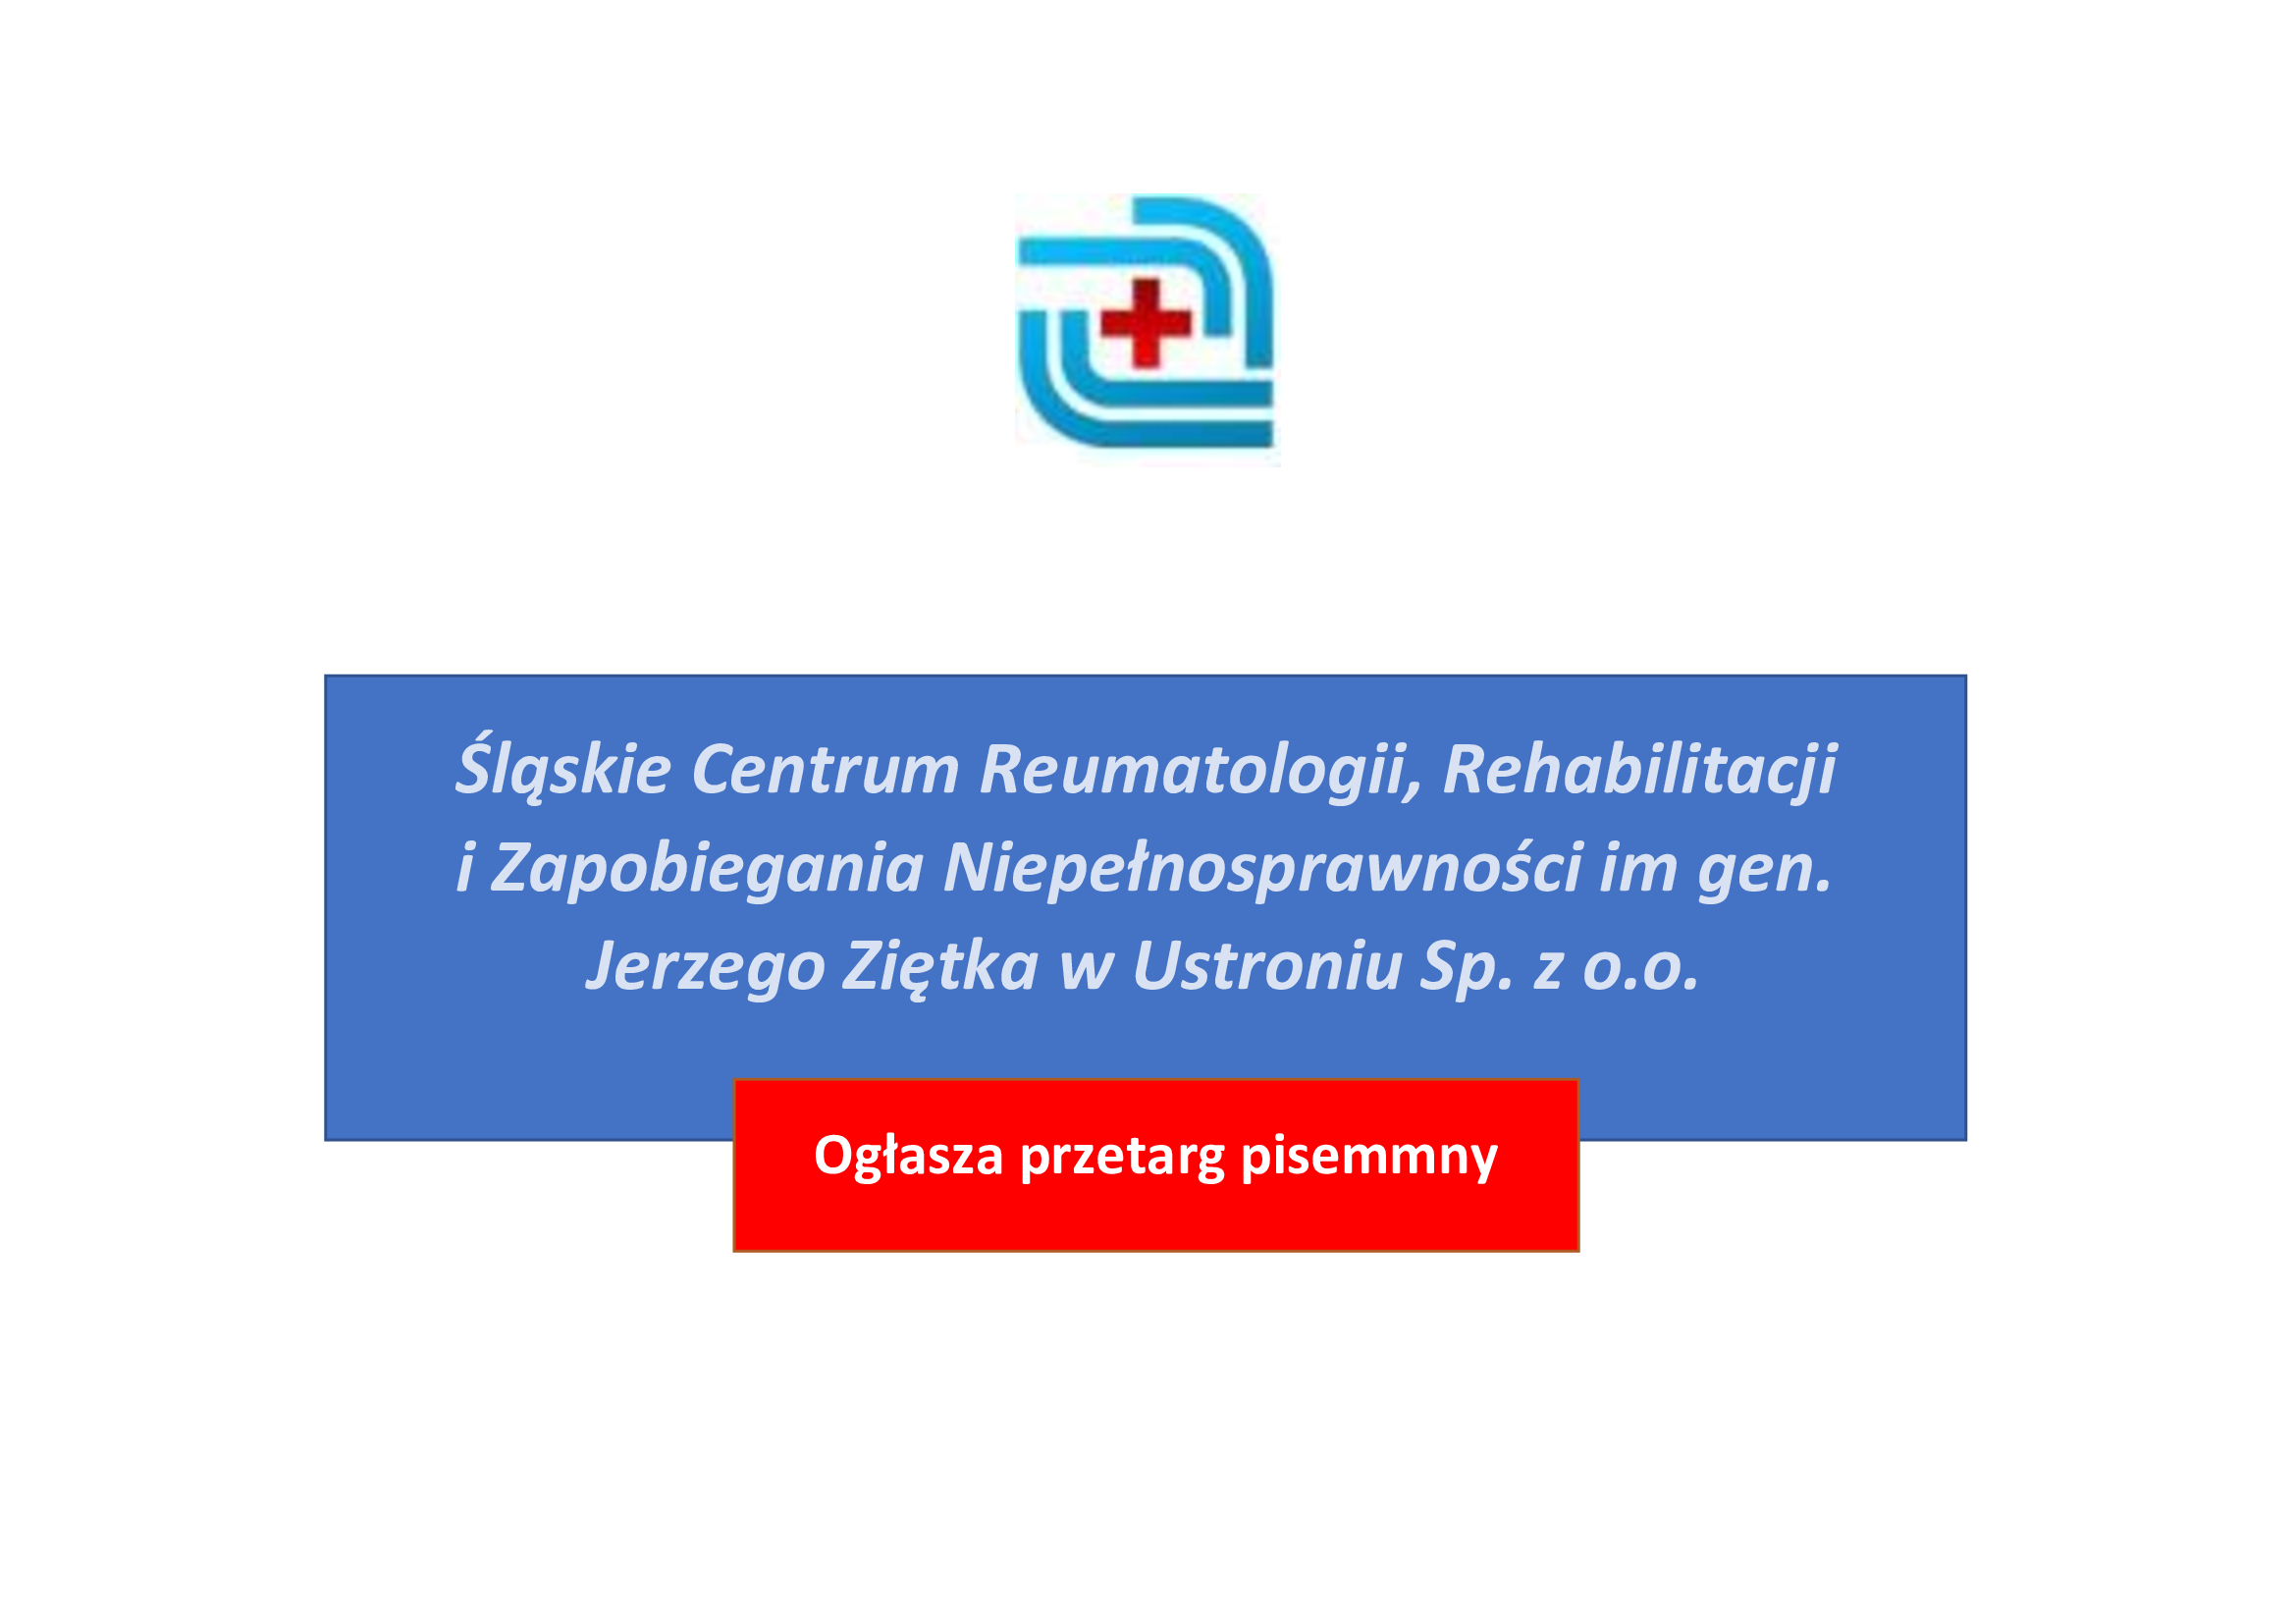 Grafika przedstawia logo oraz pełną nazwę Śląskiego Centrum Reumatologii, Rehabilitacji i Zapobiegania Niepełnosprawności.